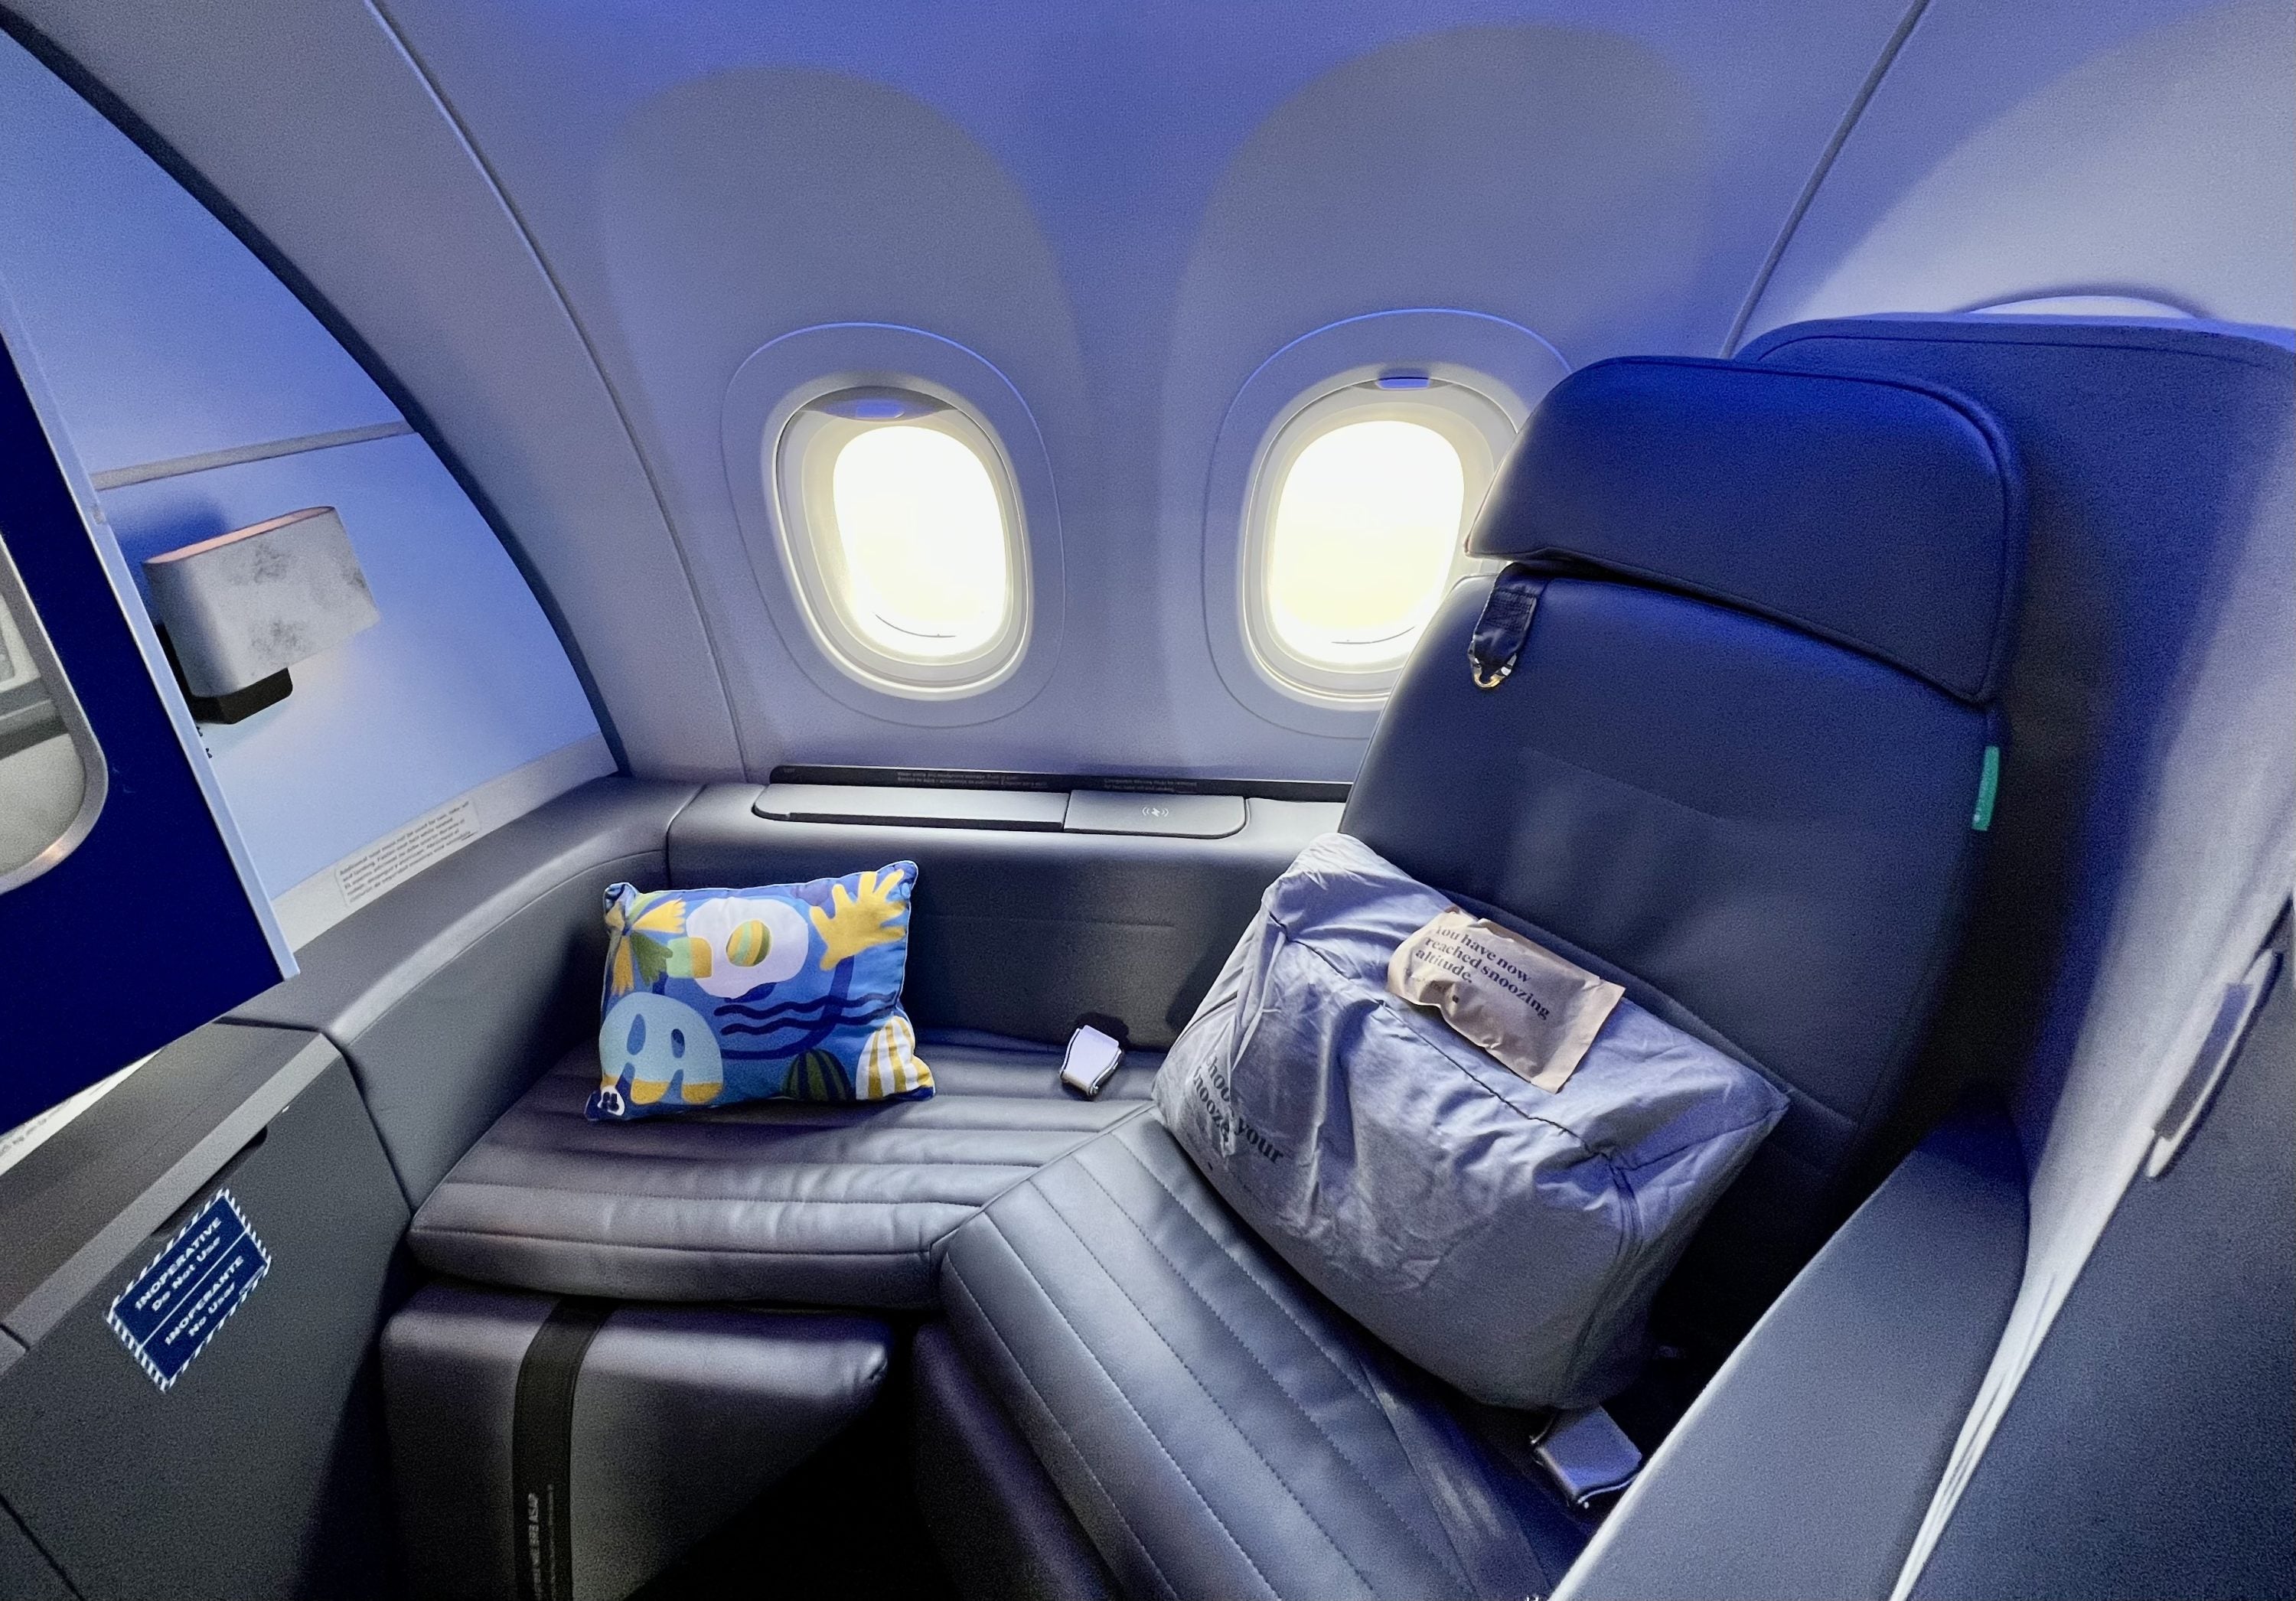 JetBlue Mint A321LR Mint Studio Seat 1F